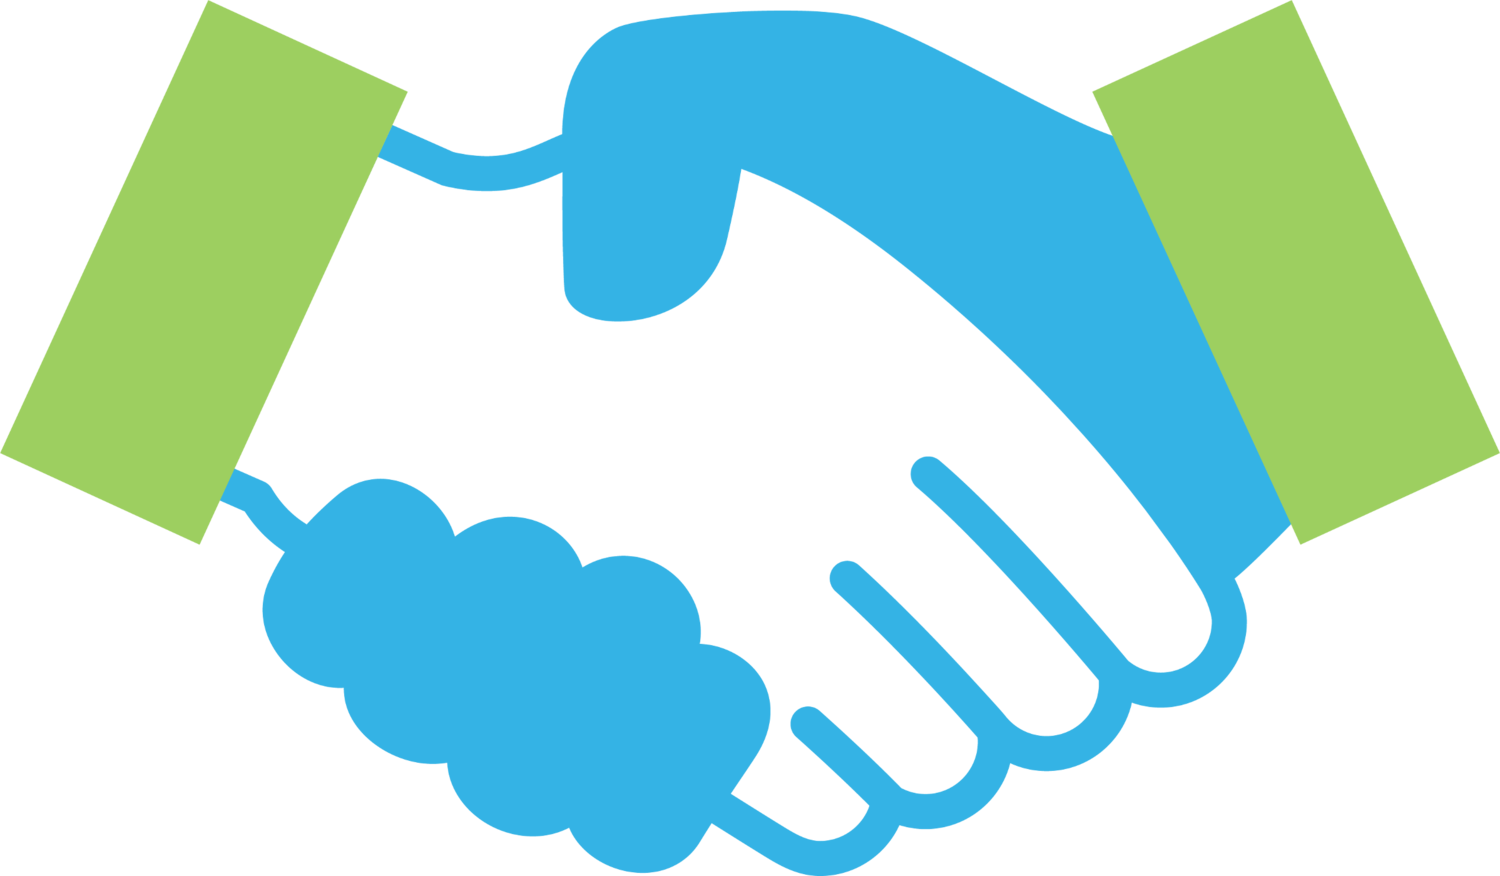 handshake clipart consultancy